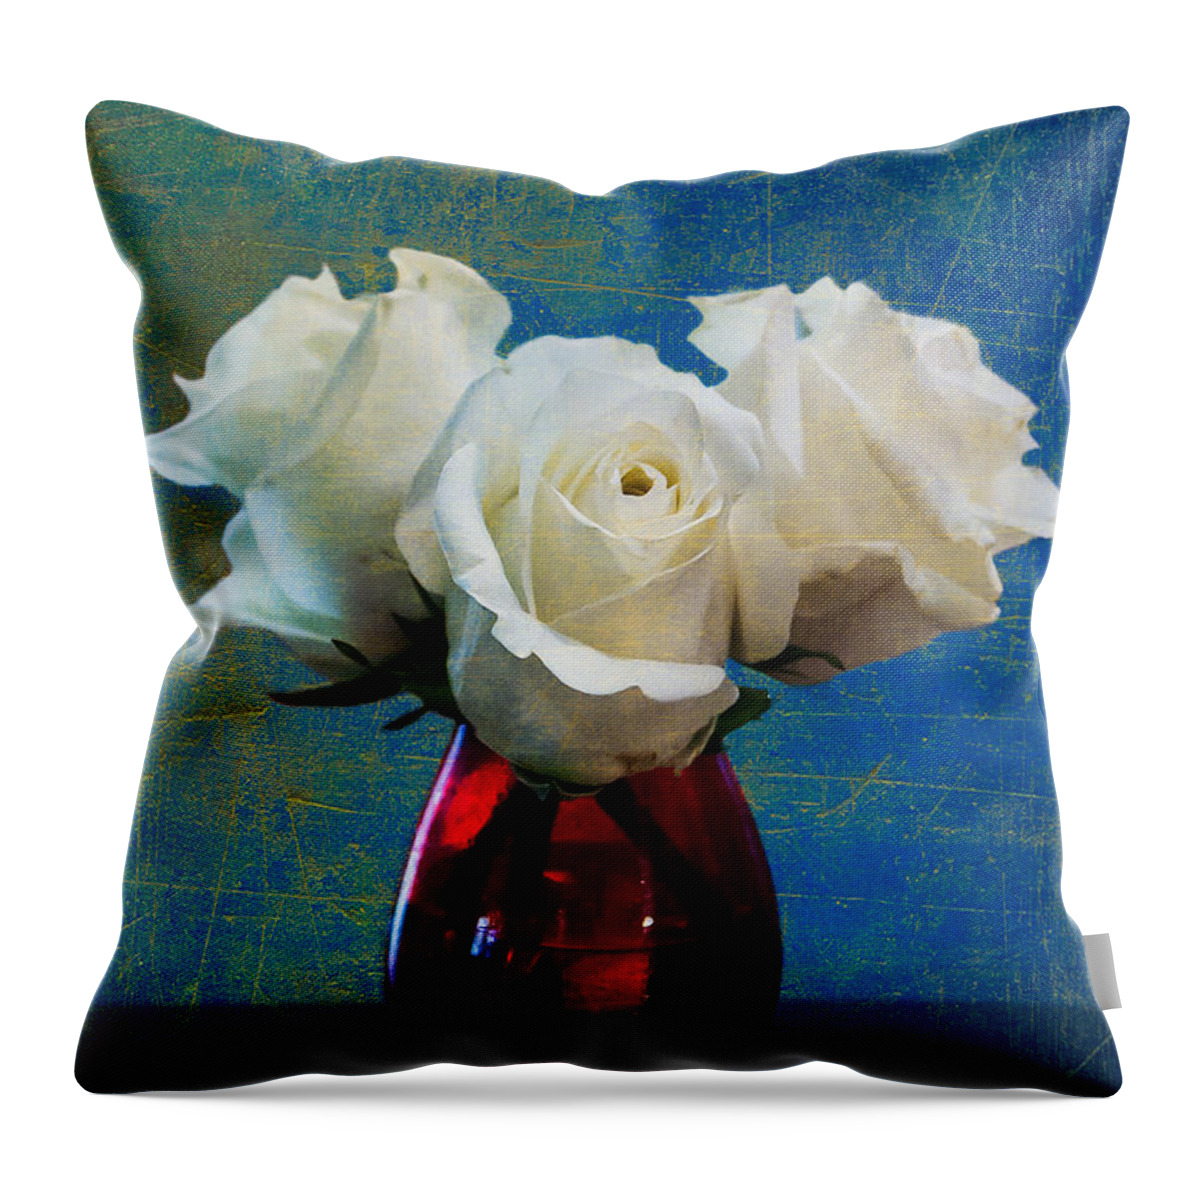 White Roses Throw Pillow featuring the digital art Three White Roses by Eduardo Tavares